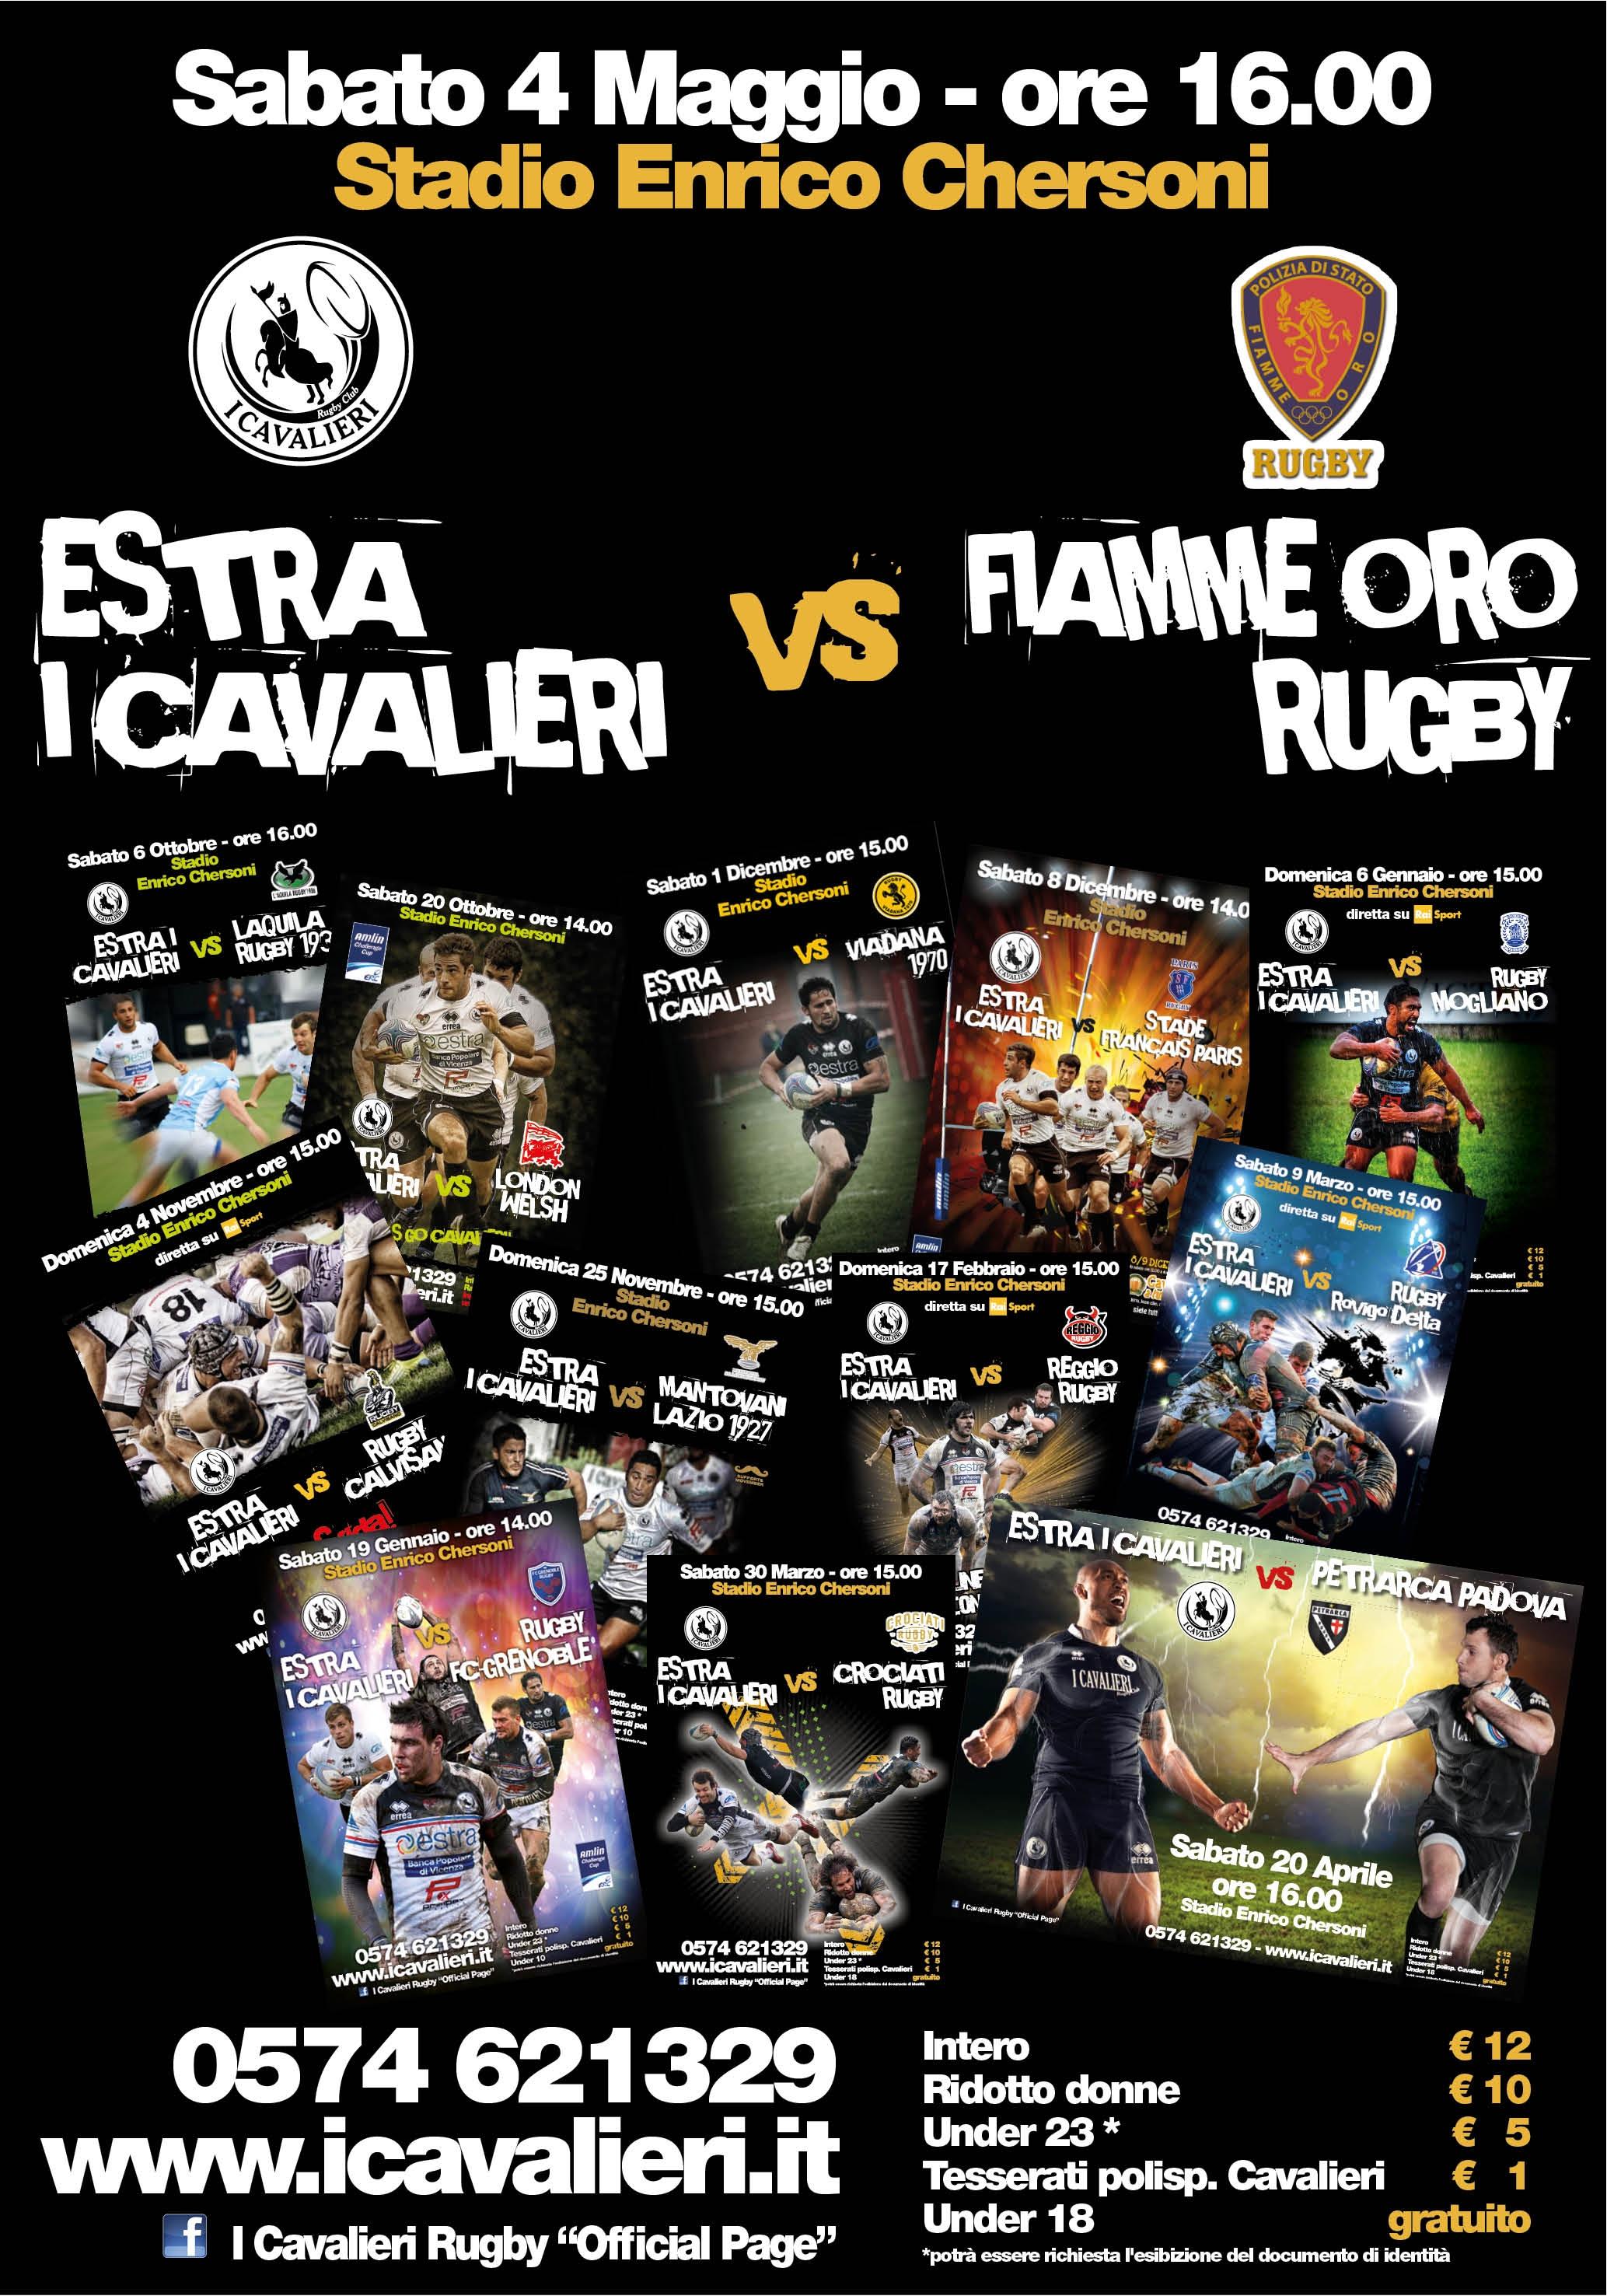 Estra I Cavalieri Prato-Fiamme Oro Rugby